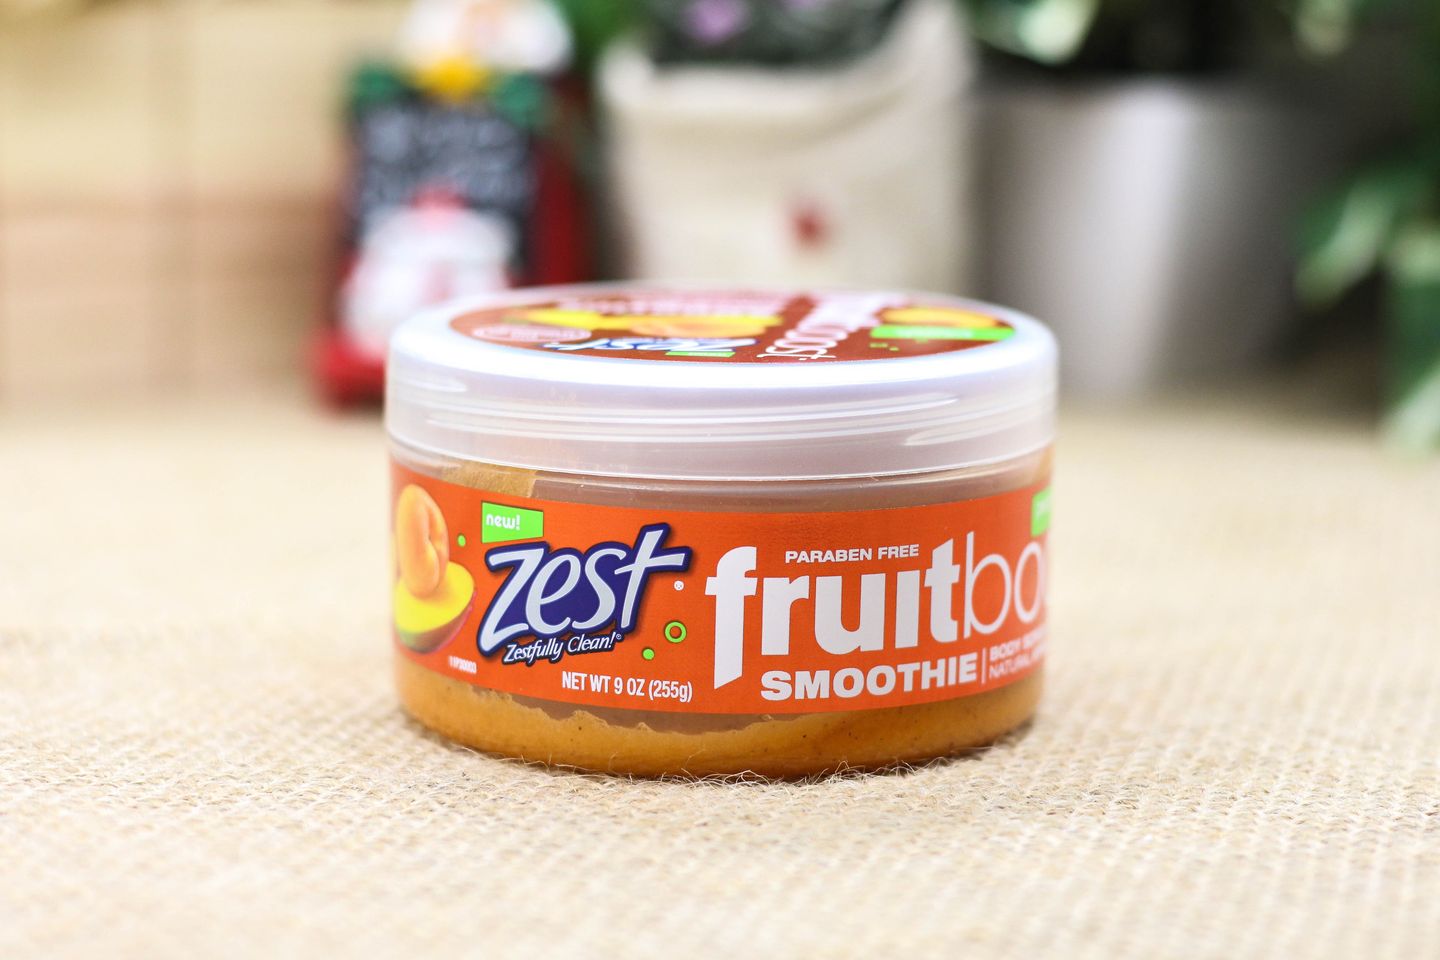 Tẩy tế bào chết cơ thể Zest Fruitboost Smoothie Body Scrub Peach Mango là sản phẩm giúp loại bỏ những tế bào chết, bụi bẩn và mồ hôi trên cơ thể